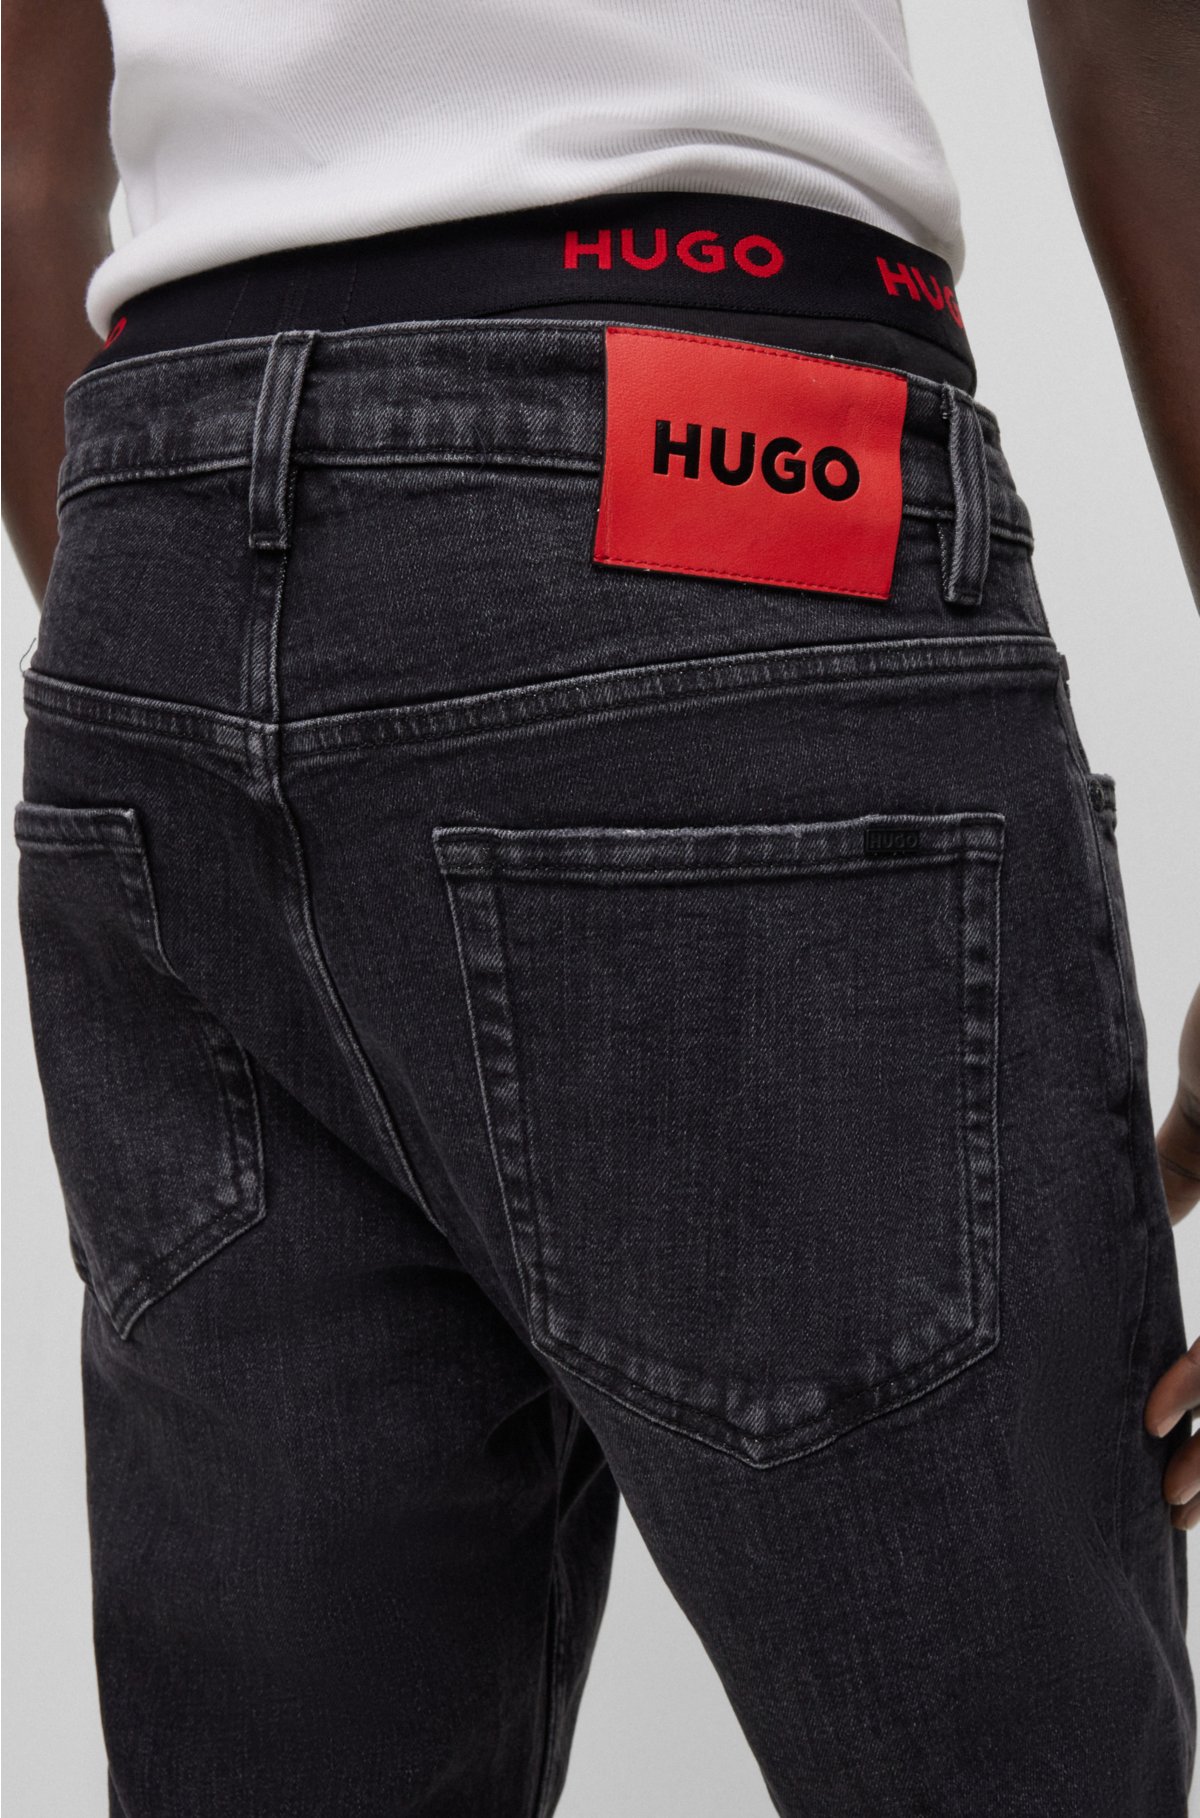 Regular-fit in HUGO jeans - black denim comfort-stretch